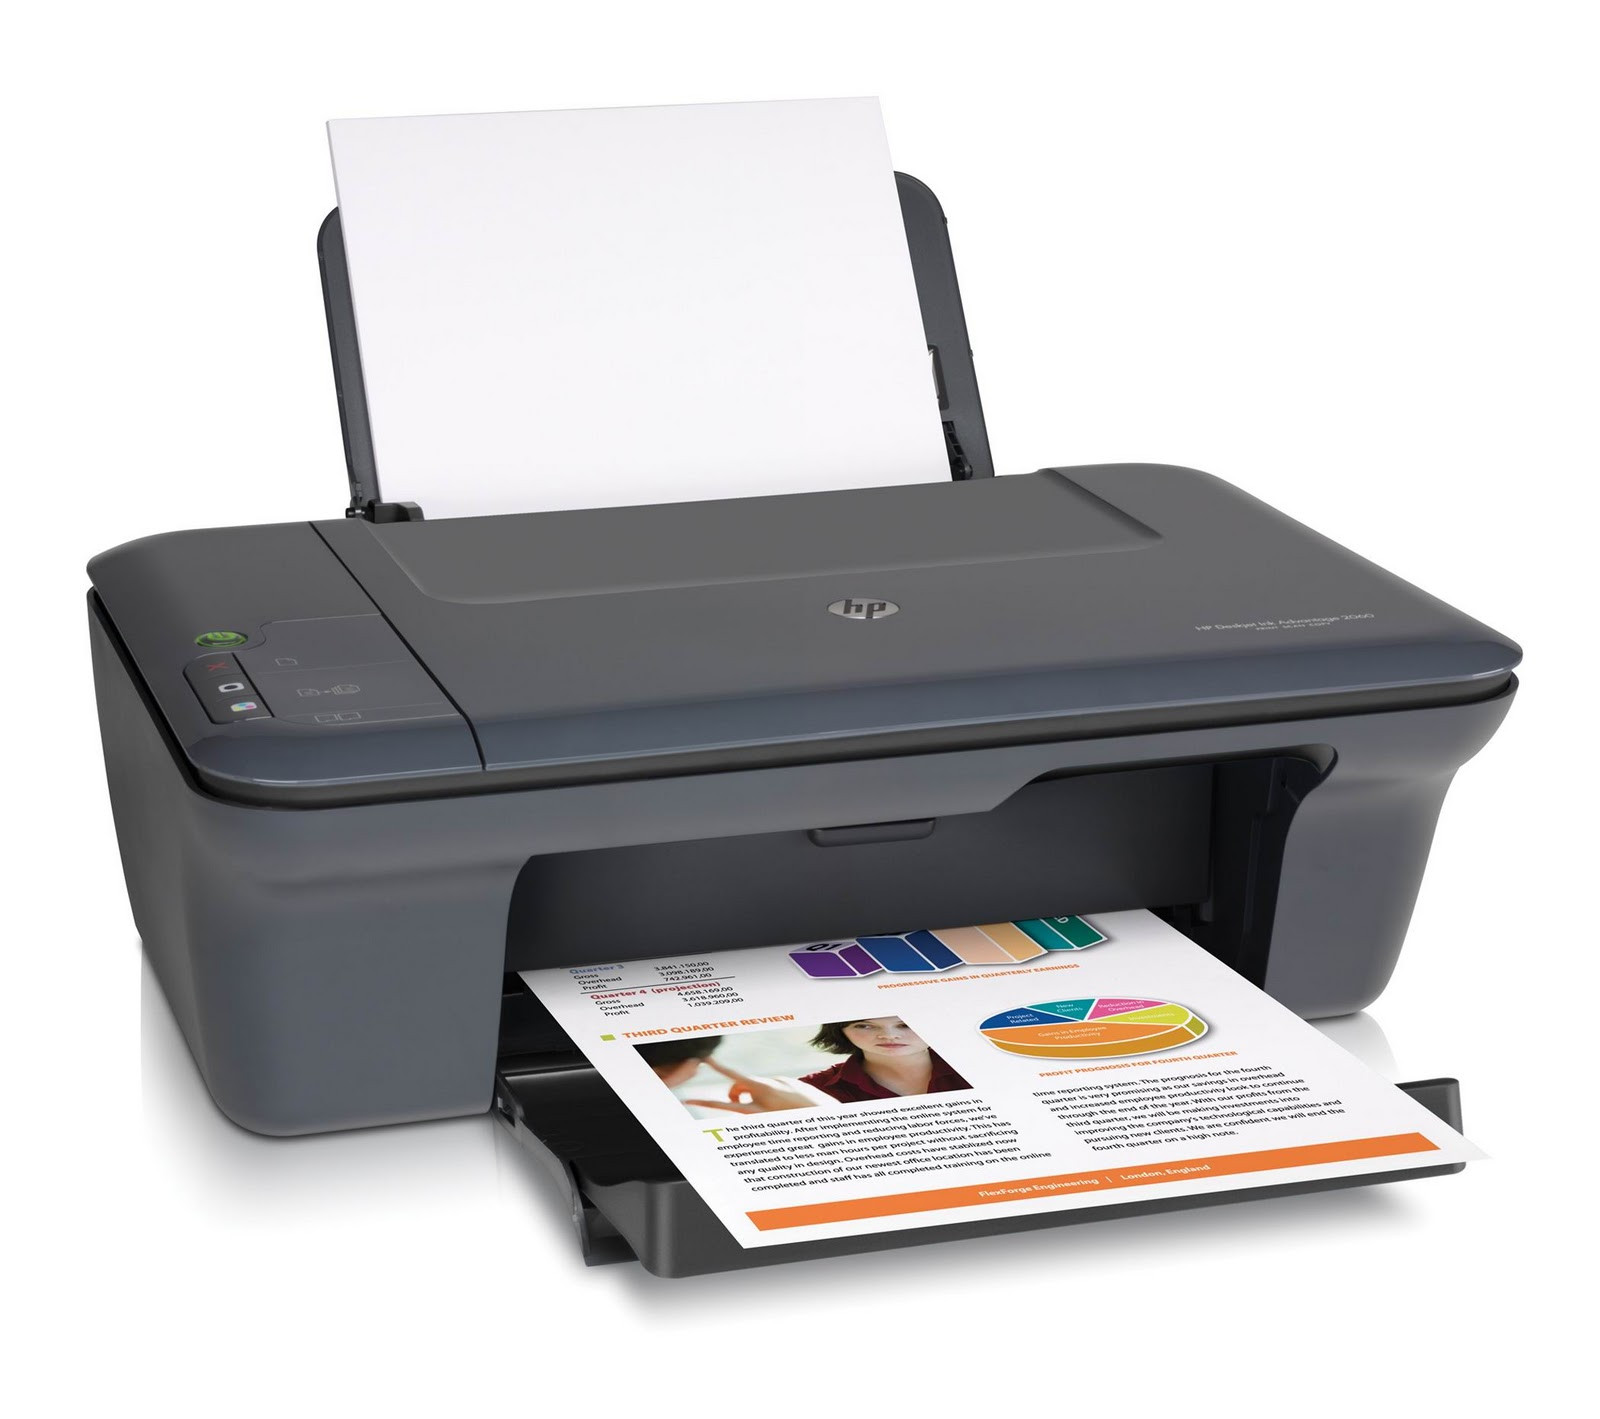 Printer HP Deskjet 2060